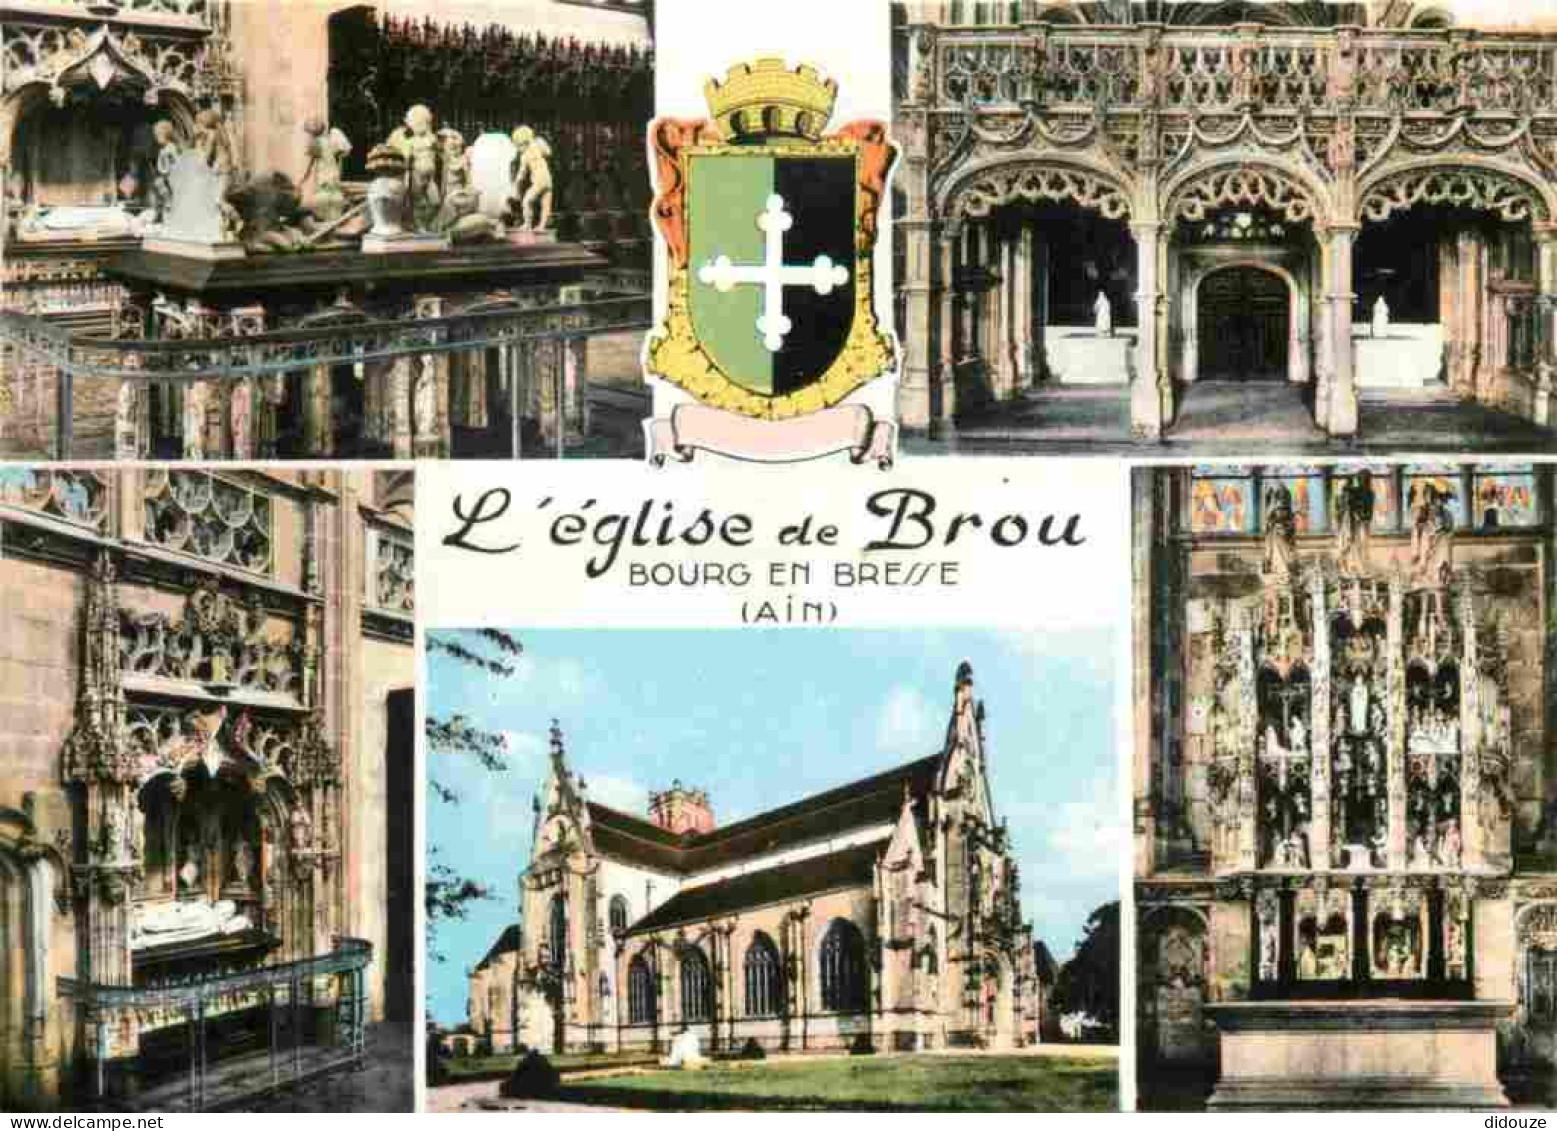 01 - Bourg En Bresse - Eglise De Brou - Intérieur De L'Eglise De Brou - Multivues - Mention Photographie Véritable - Car - Brou Church